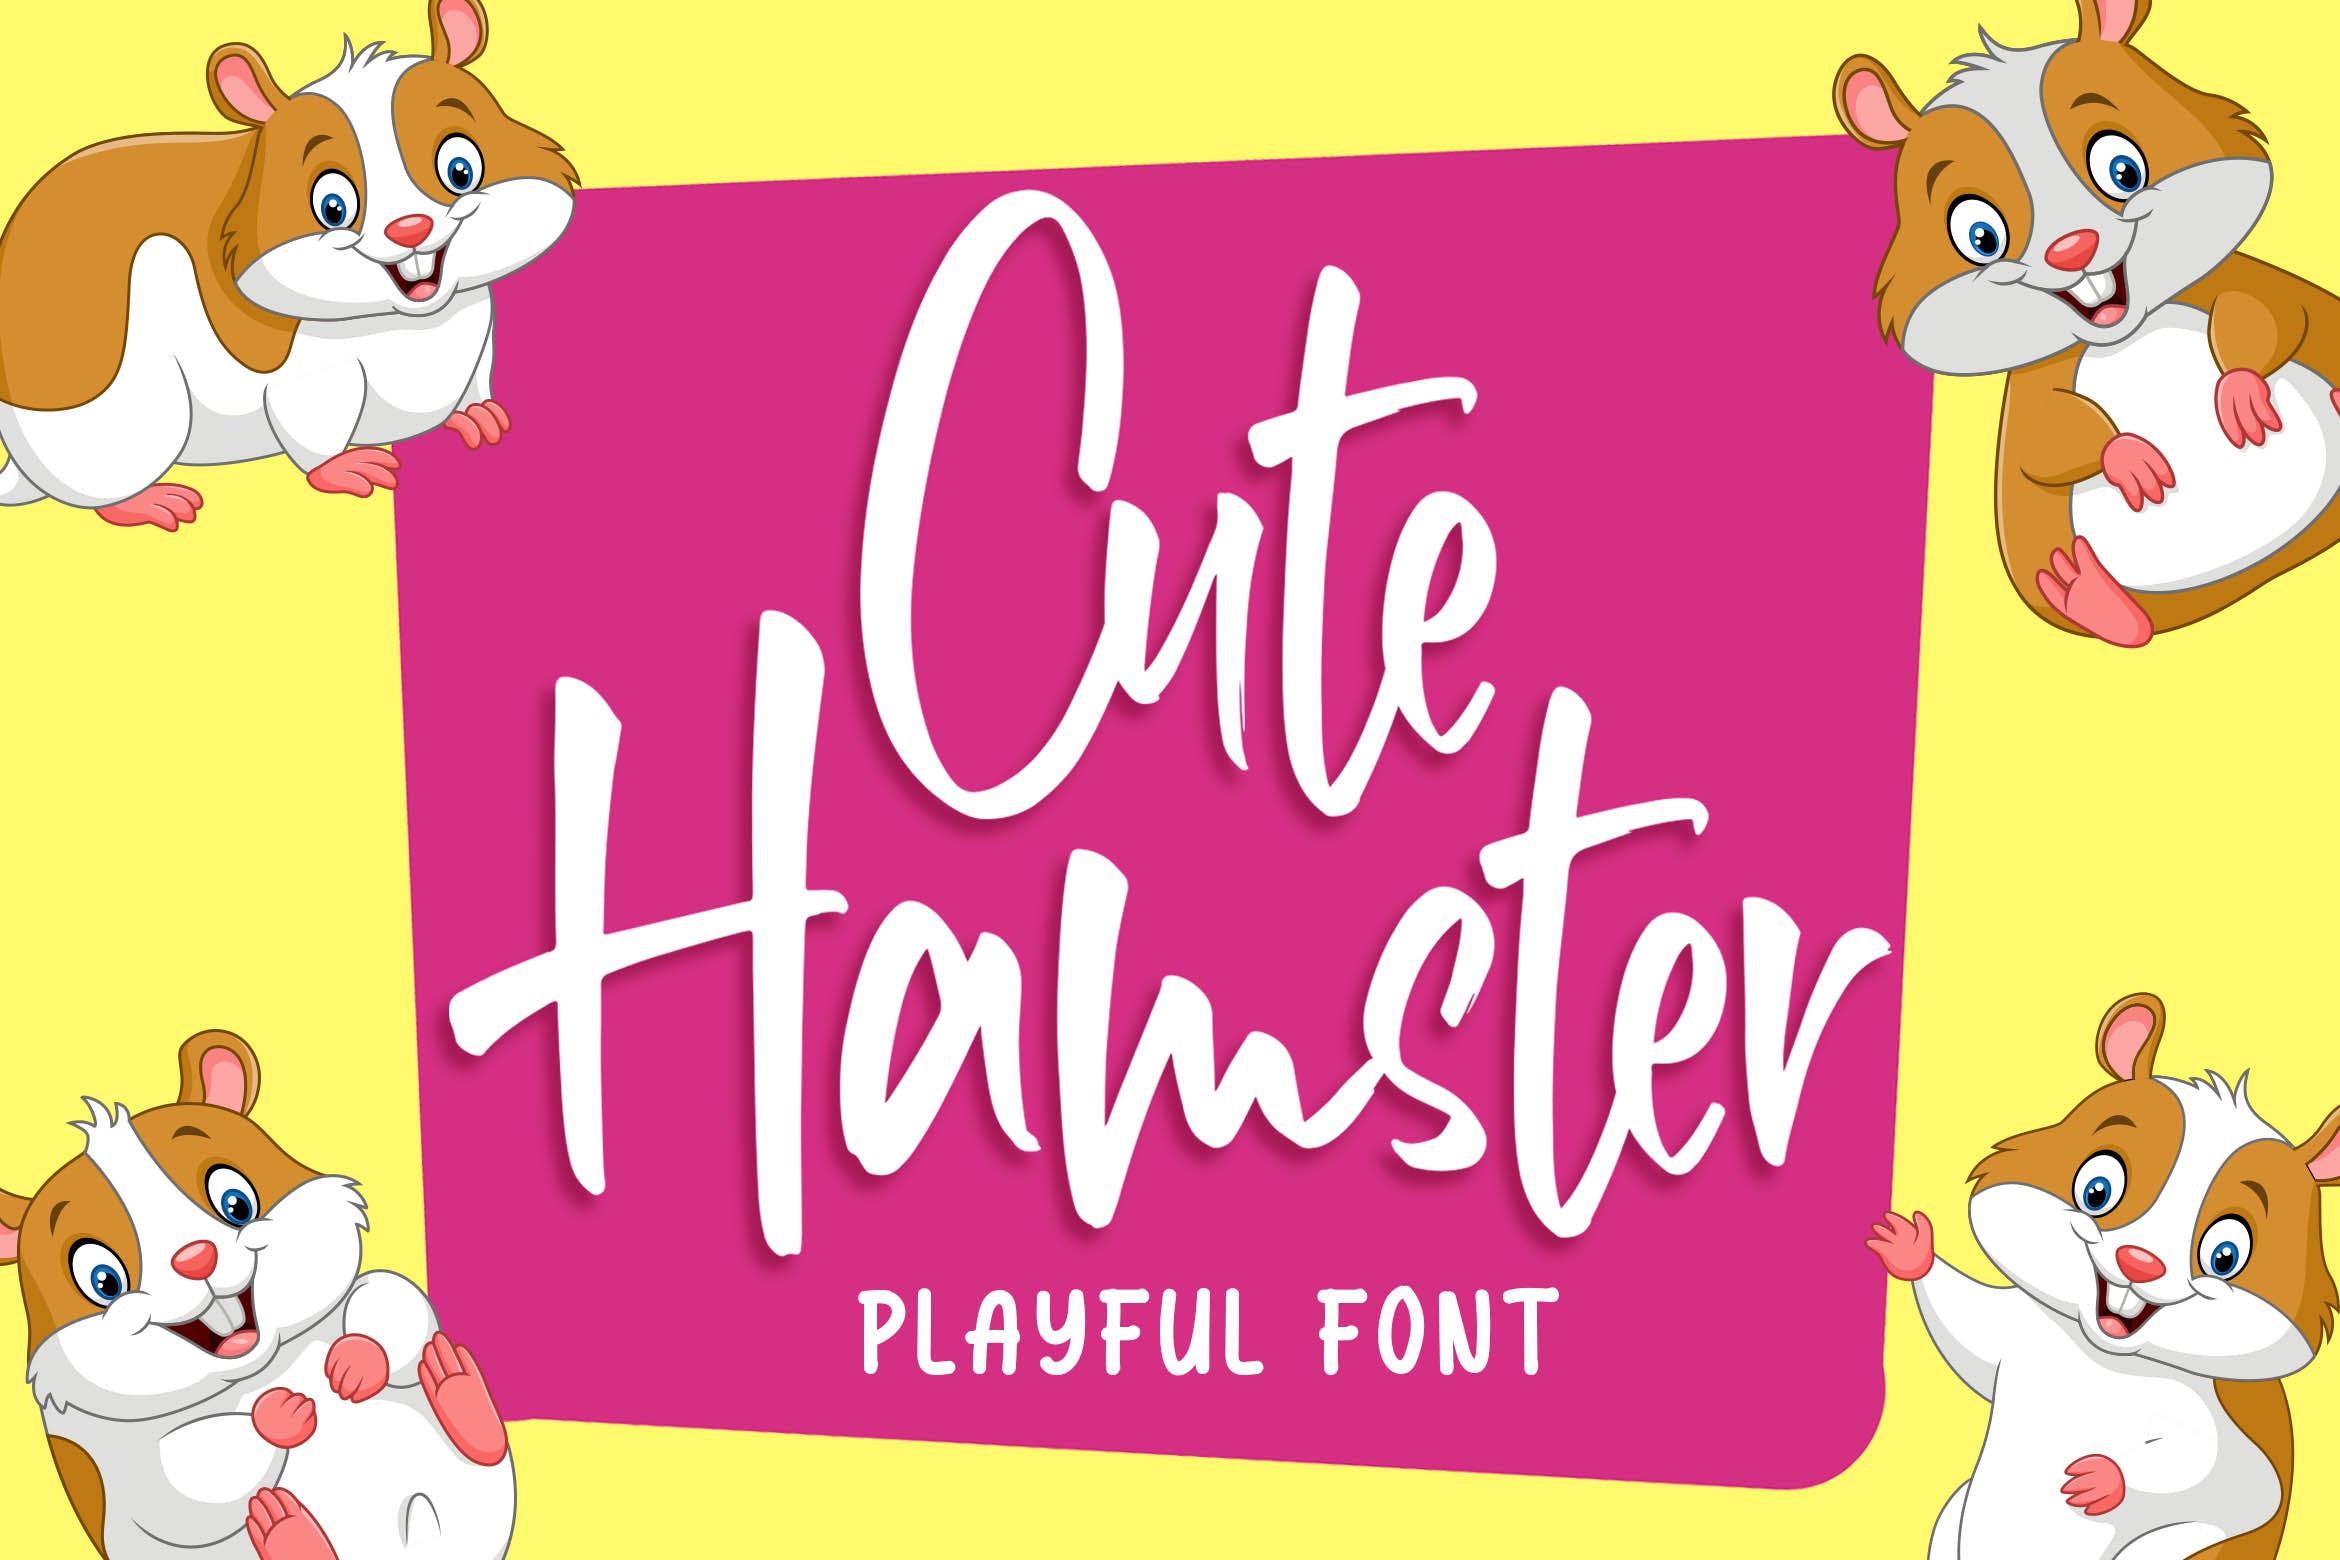 俏皮可爱风格英文手写装饰字体第一素材精选 Cute Hamster – Playful Font插图